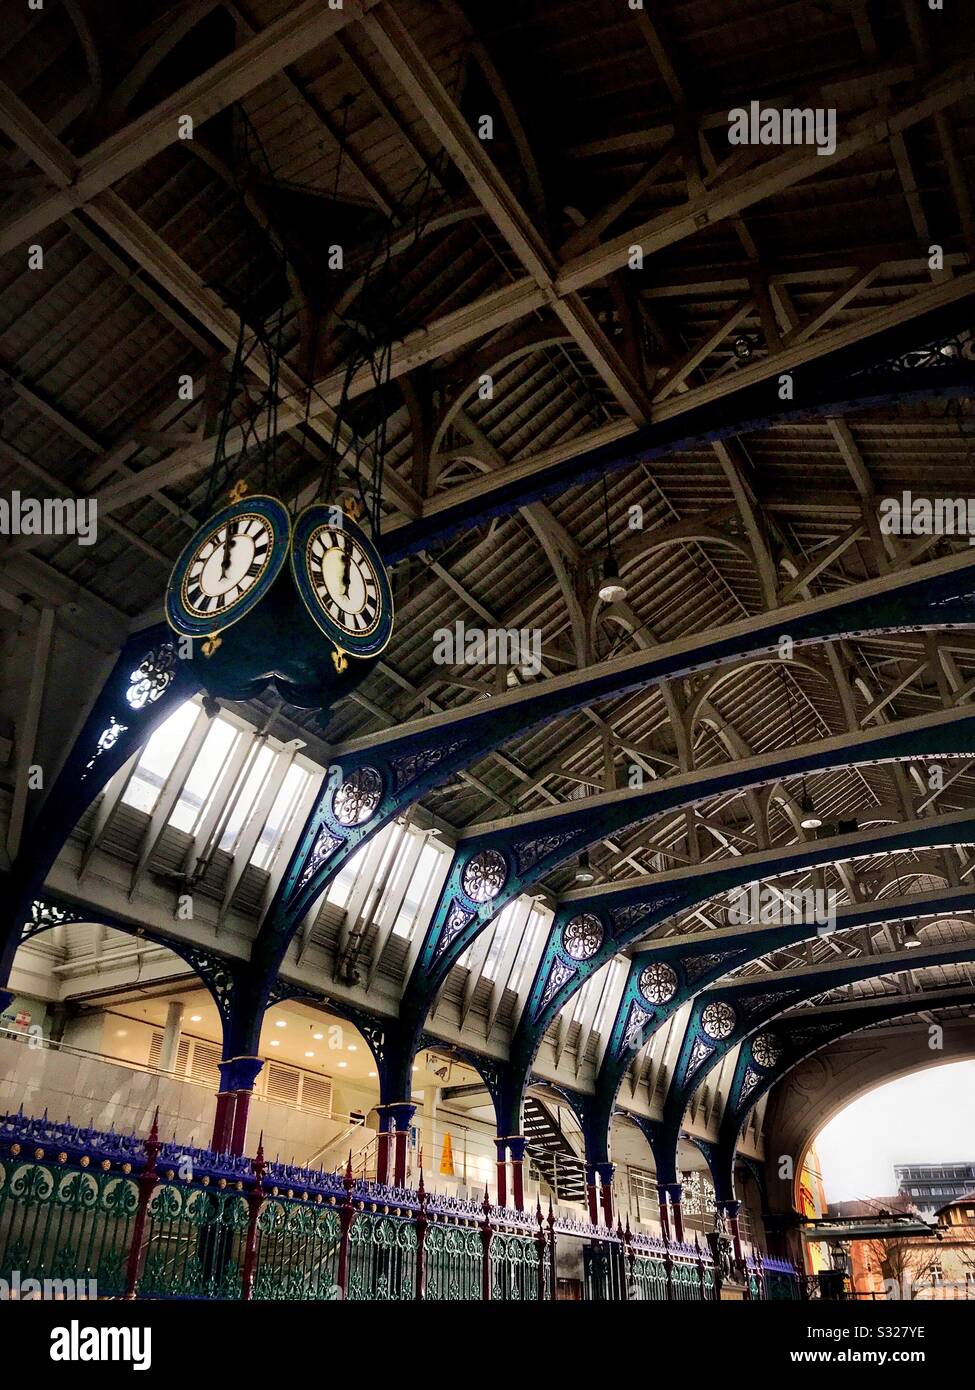 L'ornata architettura vittoriana di ferro del Smithfield Market, Londra. Foto Stock